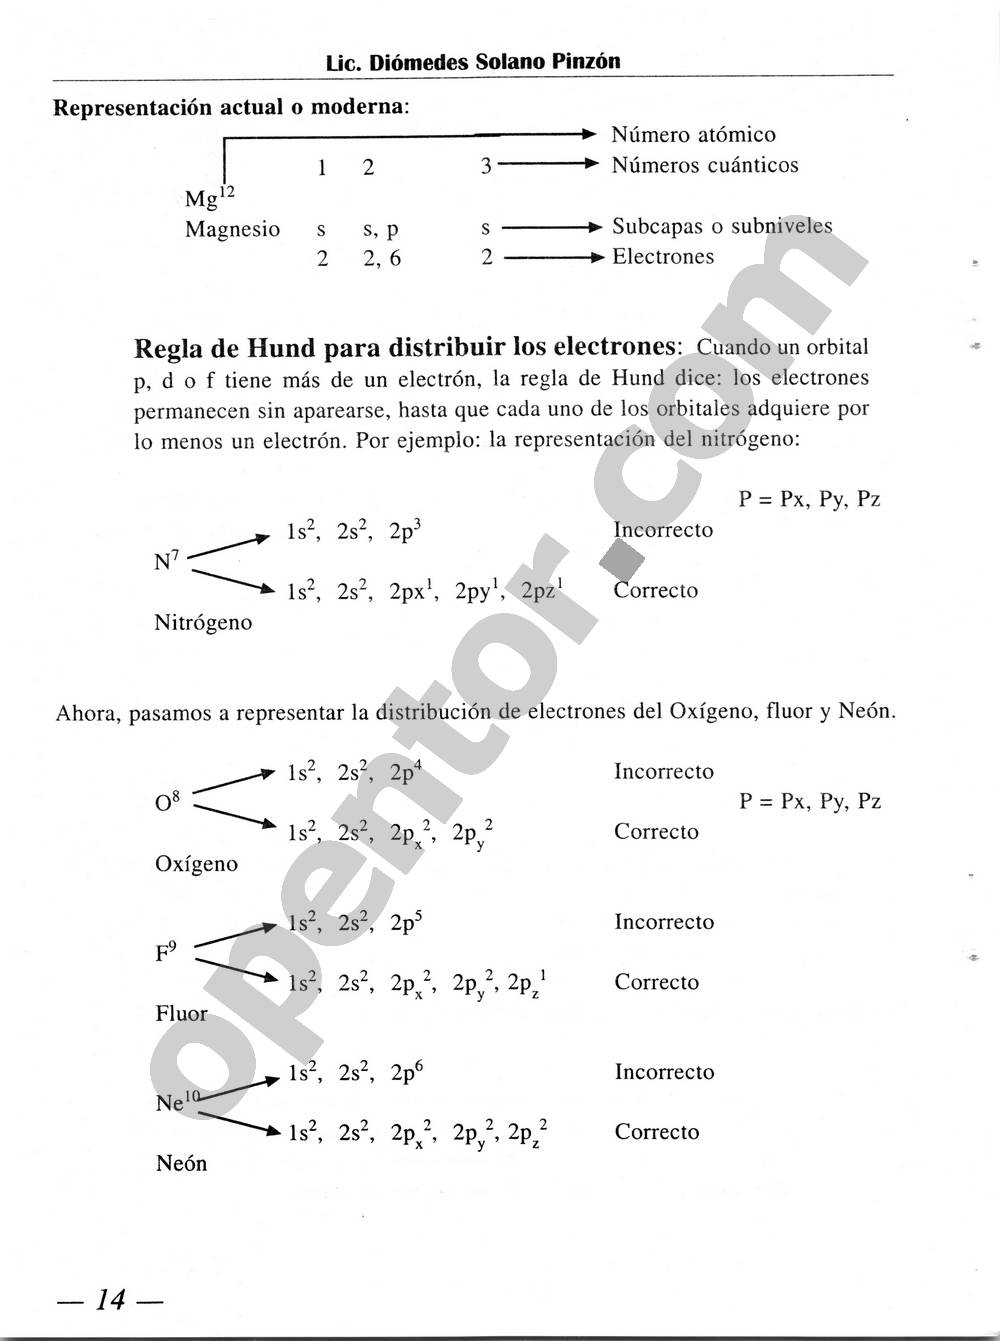 Química Simplificada de Diómedes Solano - Página 14